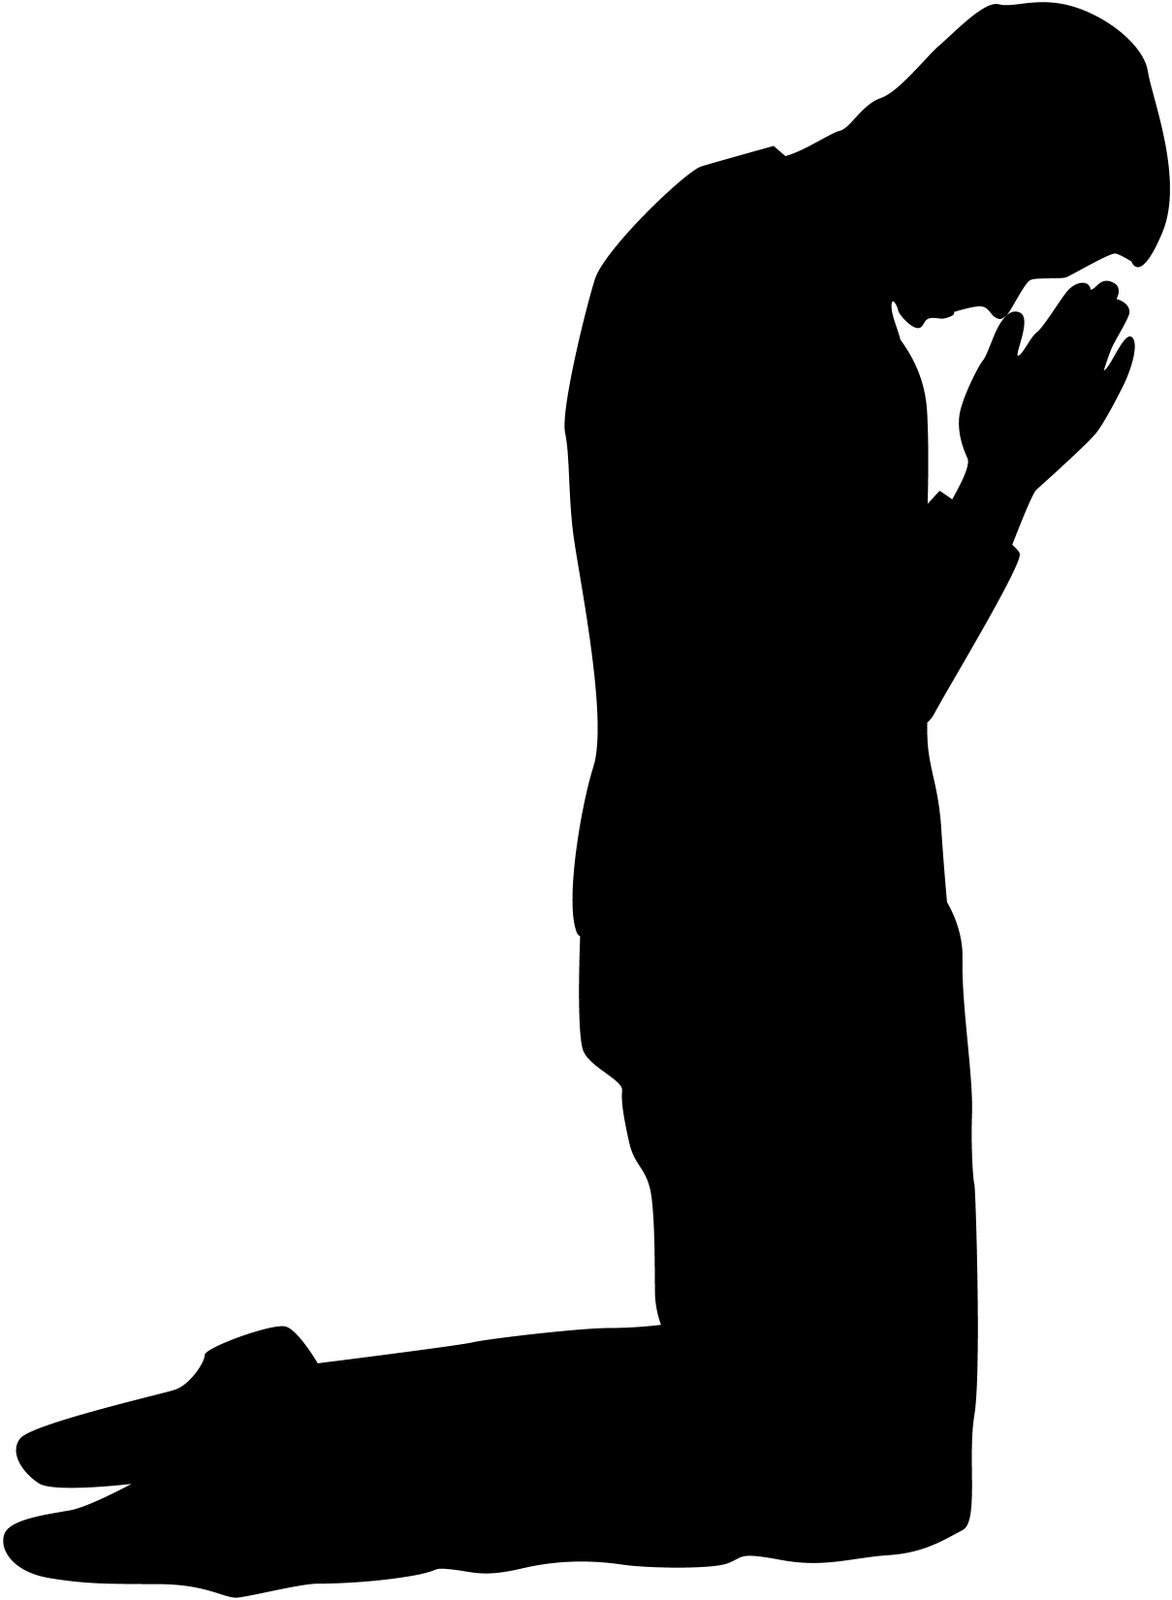 Pix For > Man Praying Silhouette